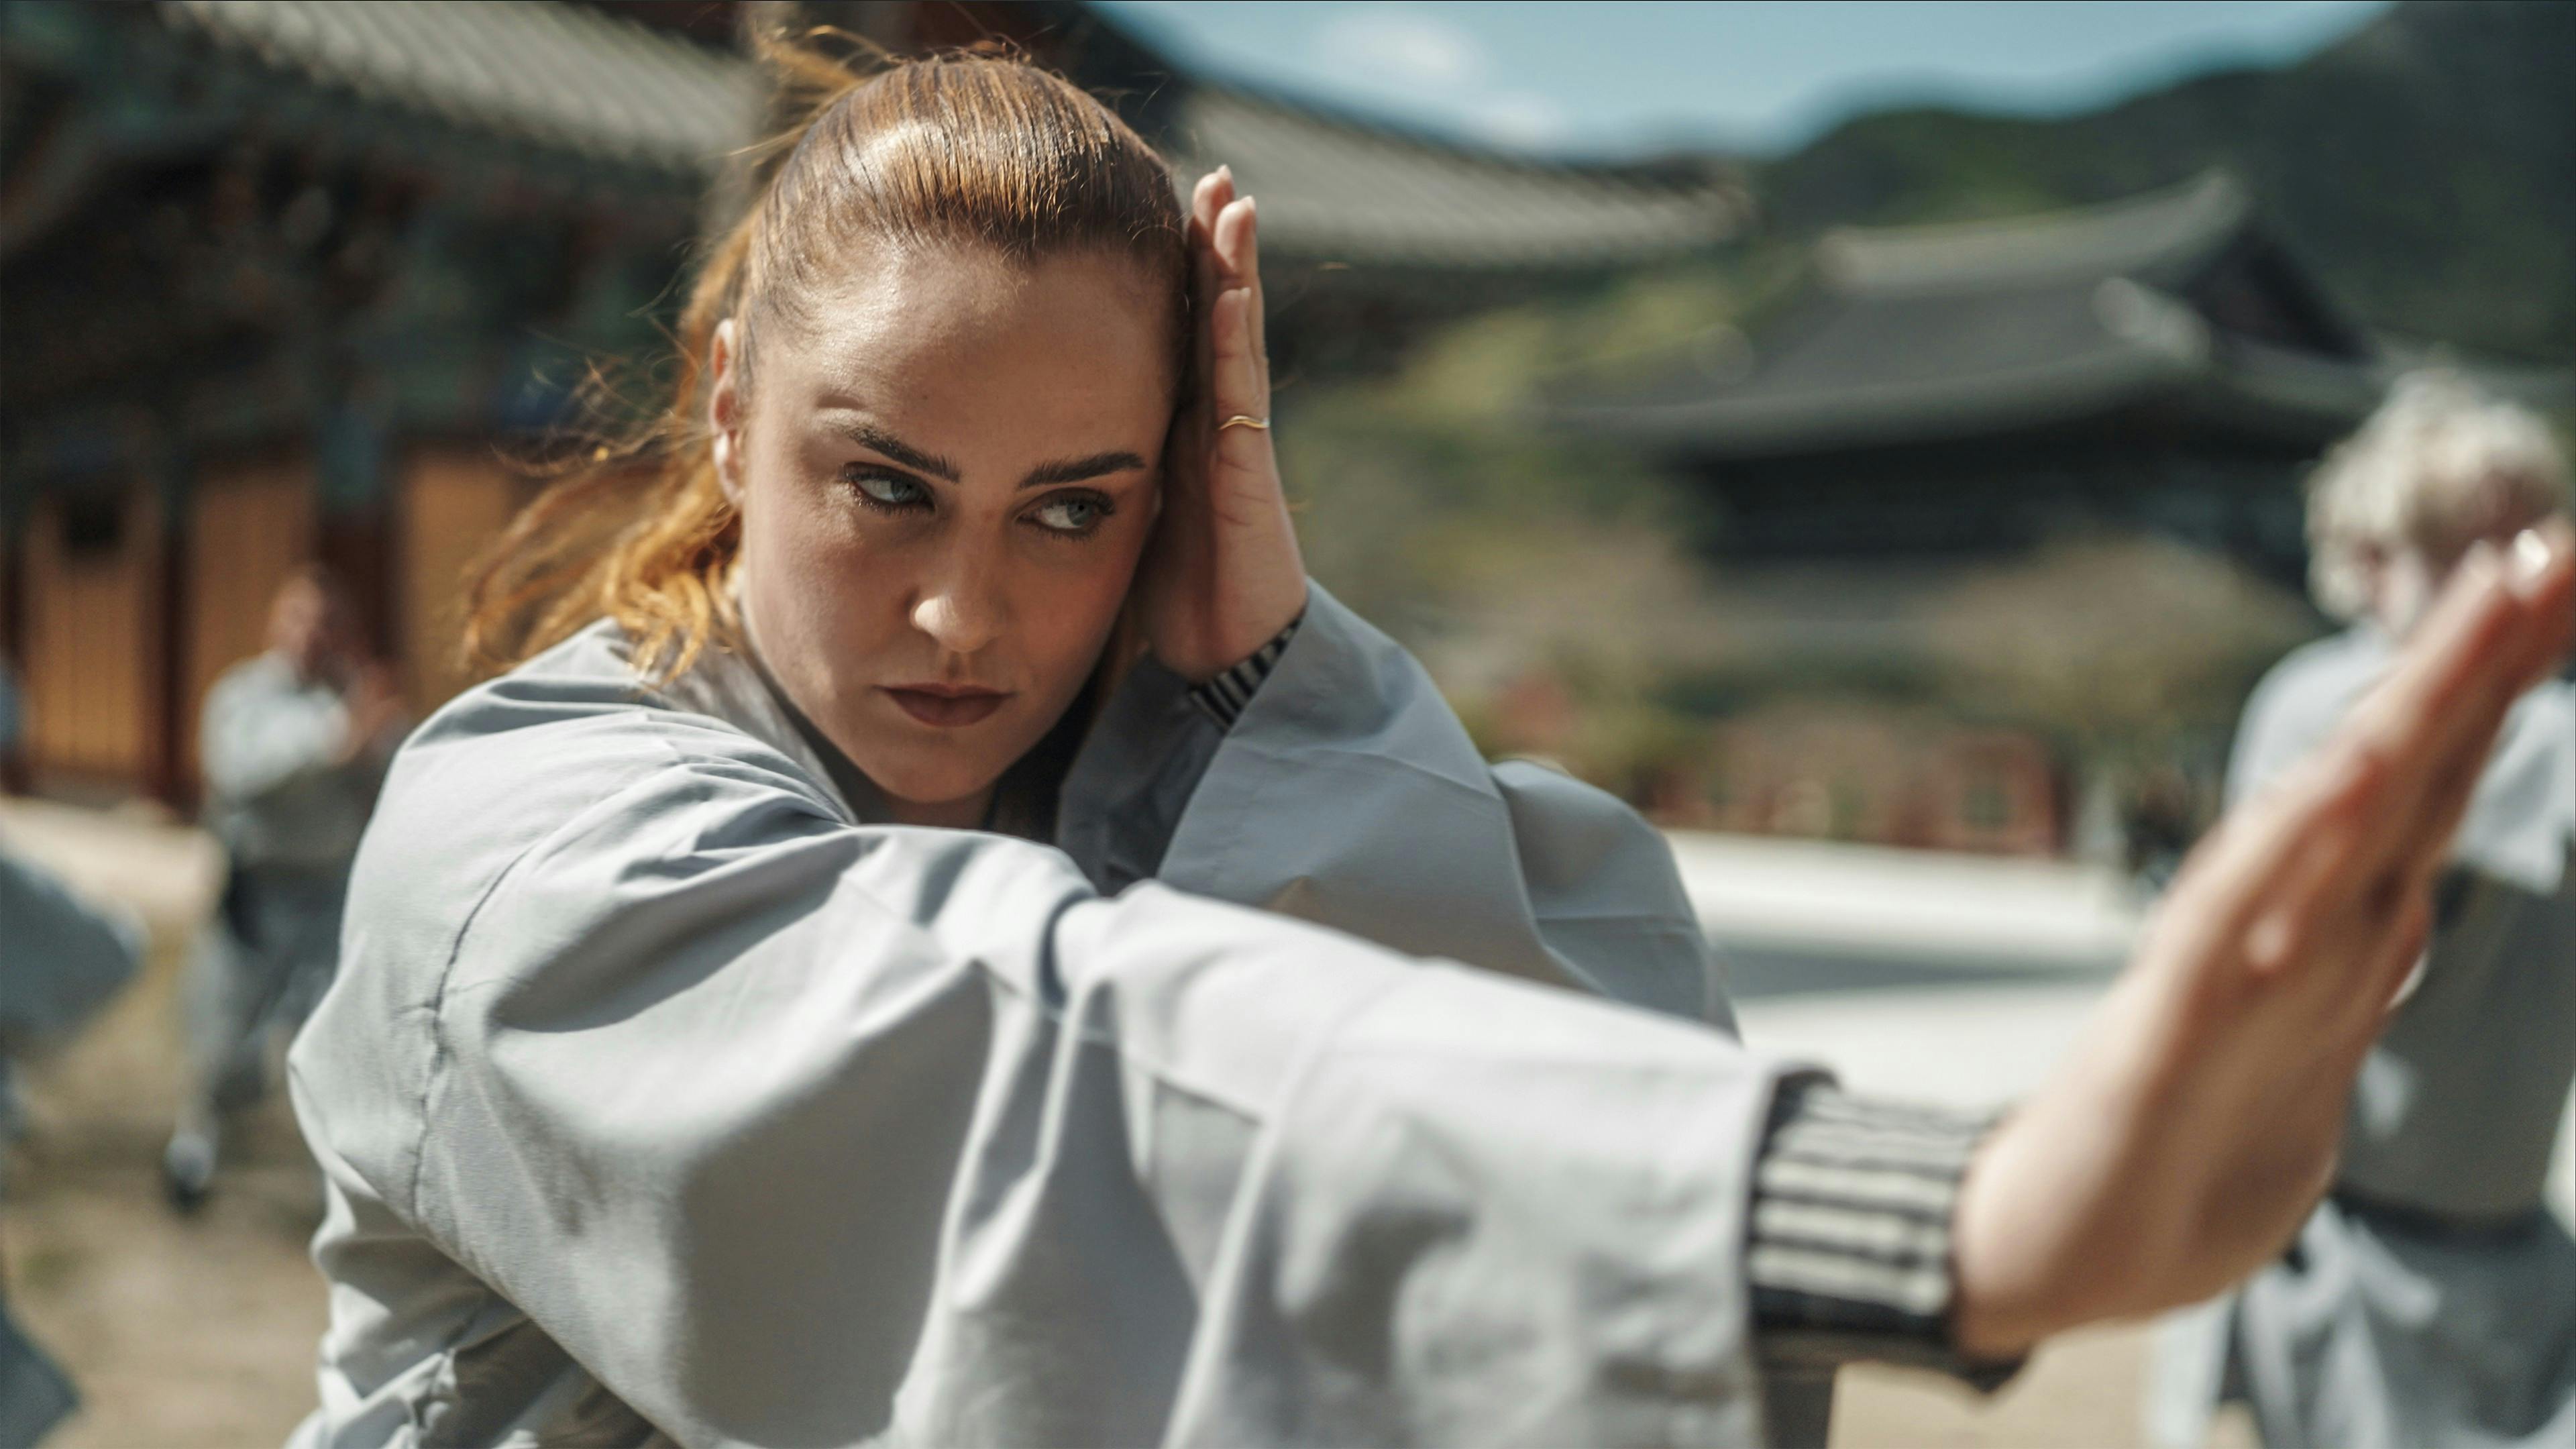 Sammen med otte andre kendte danskere har Sarah Bro i 12 dage trænet og levet som Shaolin-masters i Dogapsa-templet i Sydkorea.